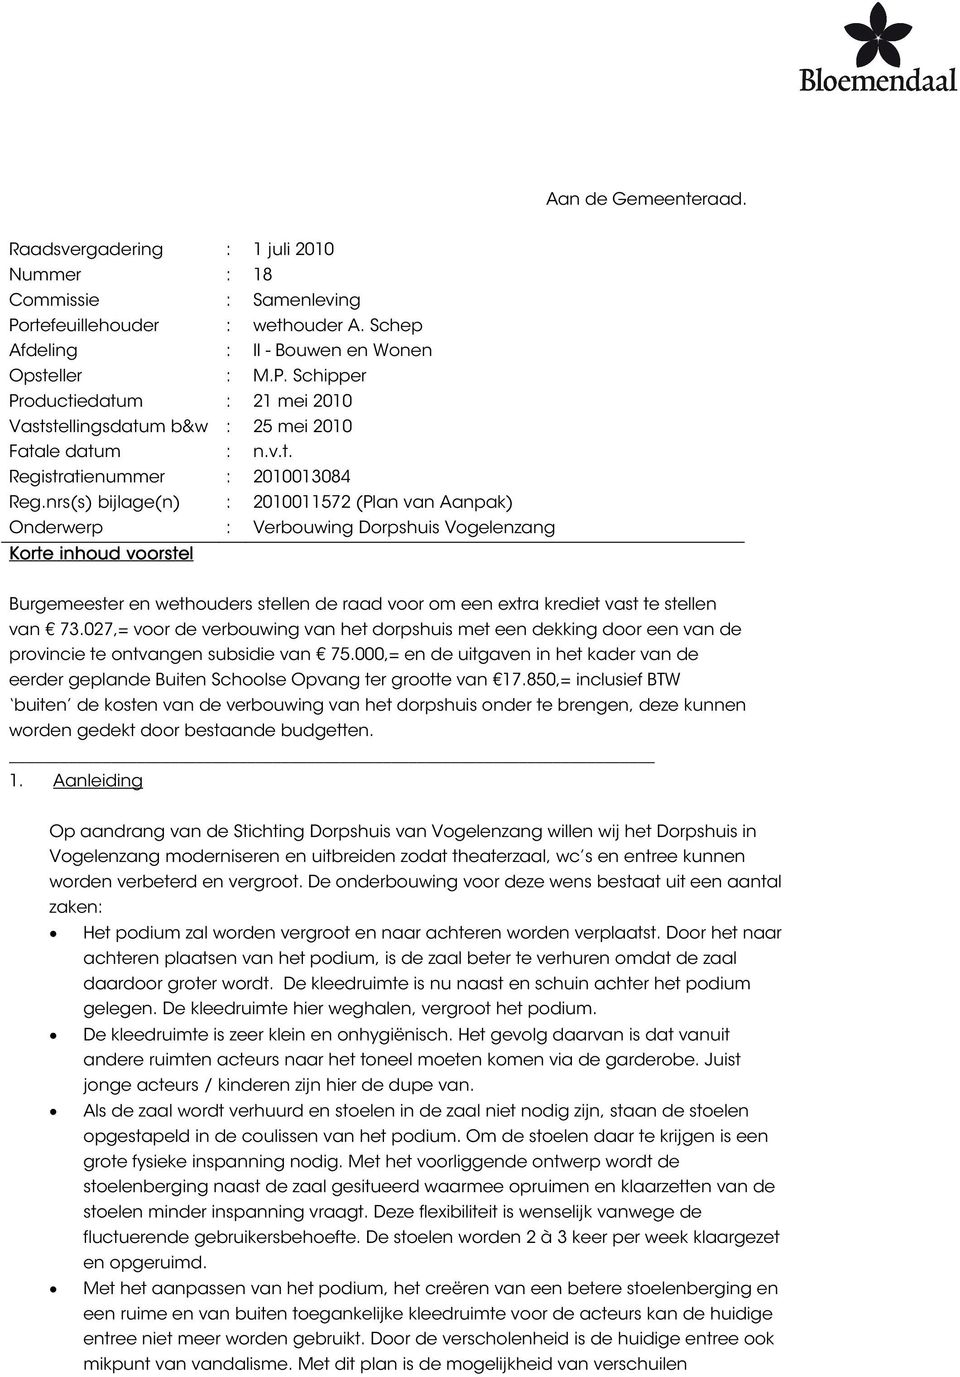 nrs(s) bijlage(n) : 2010011572 (Plan van Aanpak) Onderwerp : Verbouwing Dorpshuis Vogelenzang Korte inhoud voorstel Burgemeester en wethouders stellen de raad voor om een extra krediet vast te